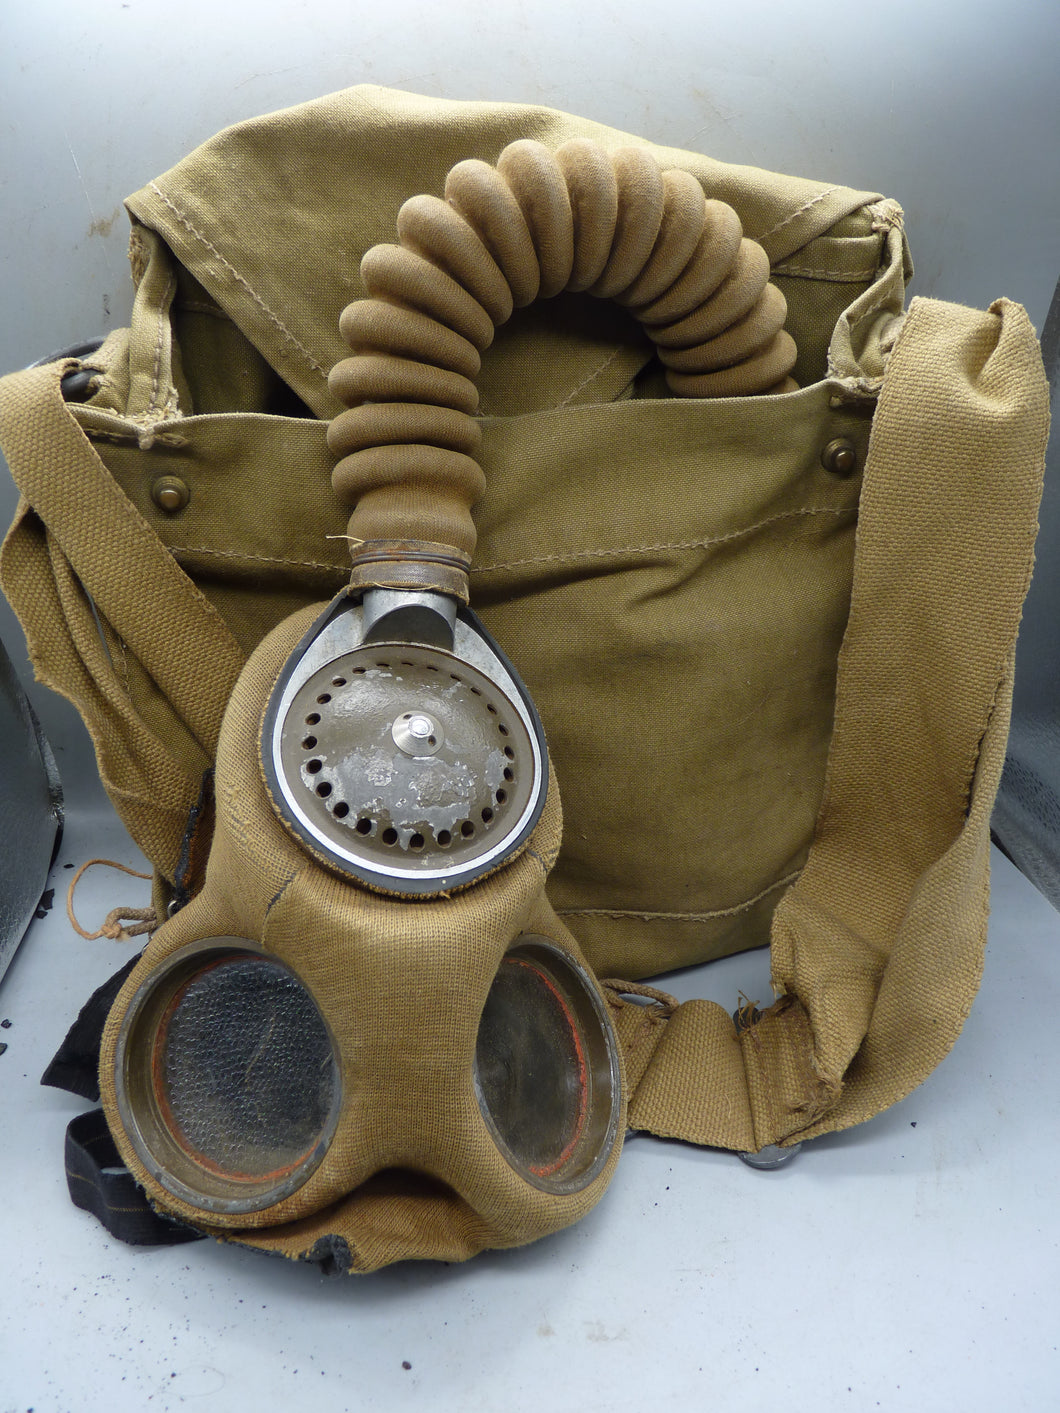 Original britische zivile Gasmaske aus dem 2. Weltkrieg - komplett in Originalverpackung